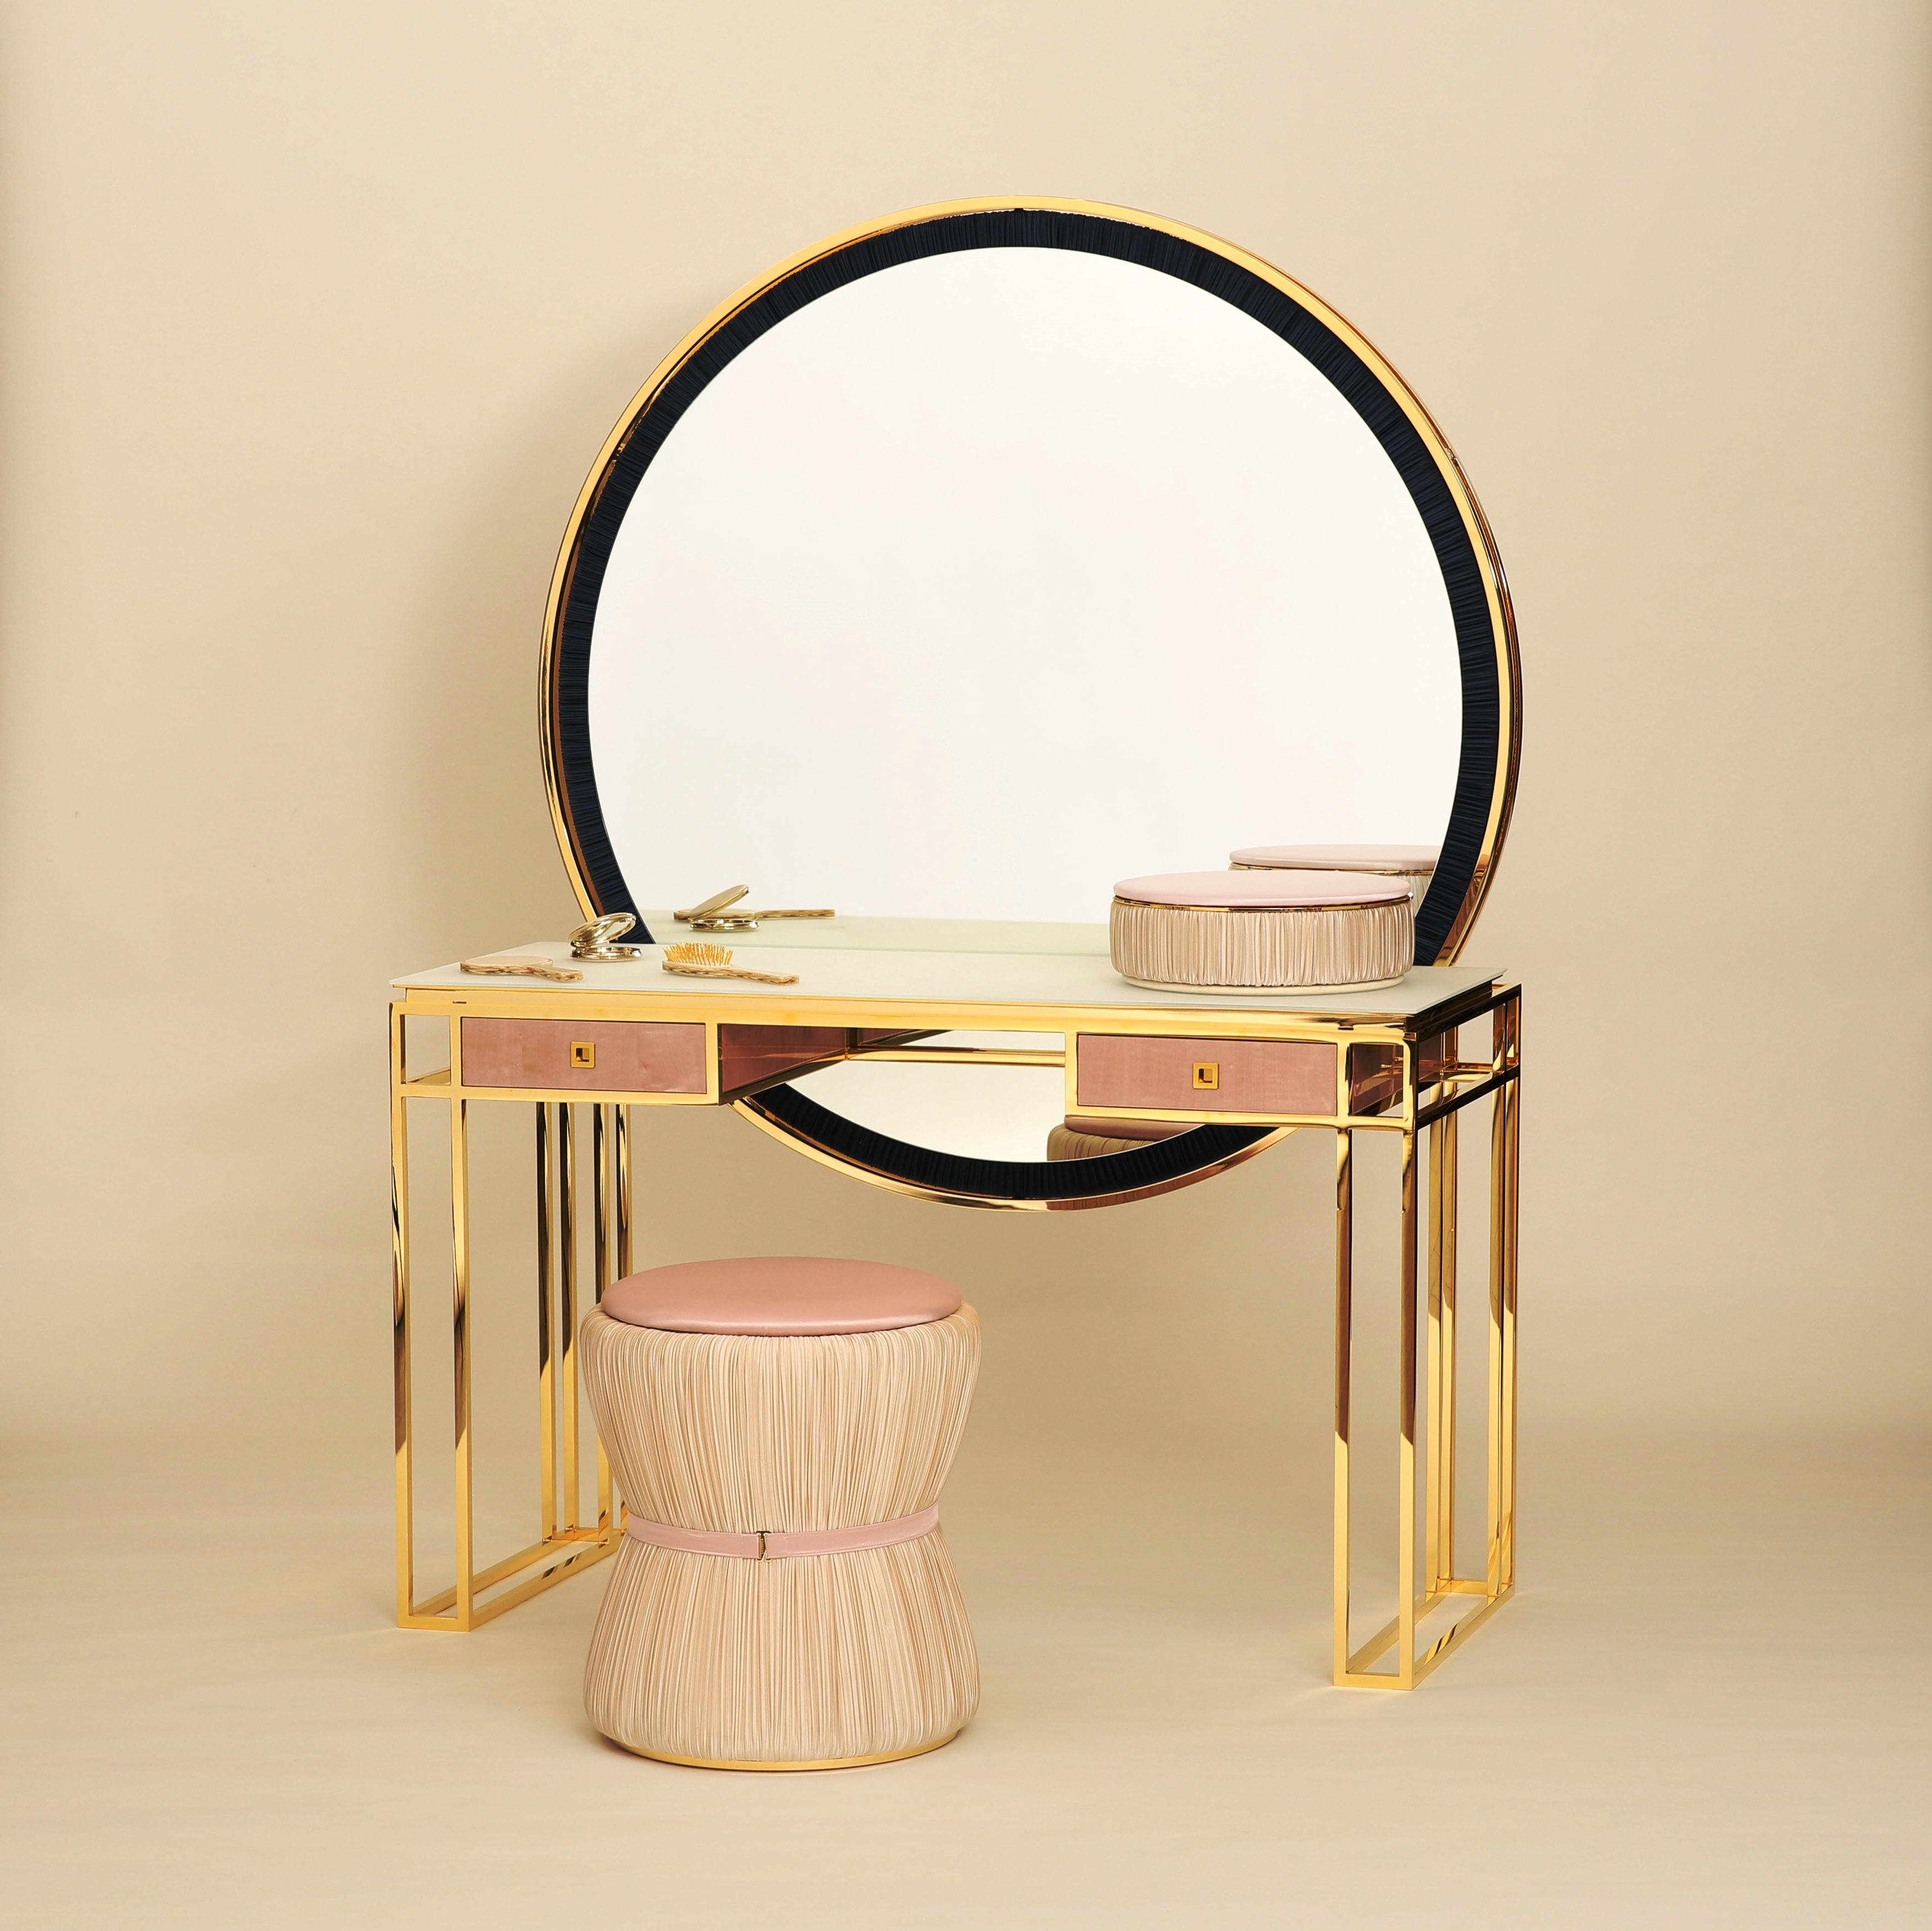 La Perla Mia vanity table